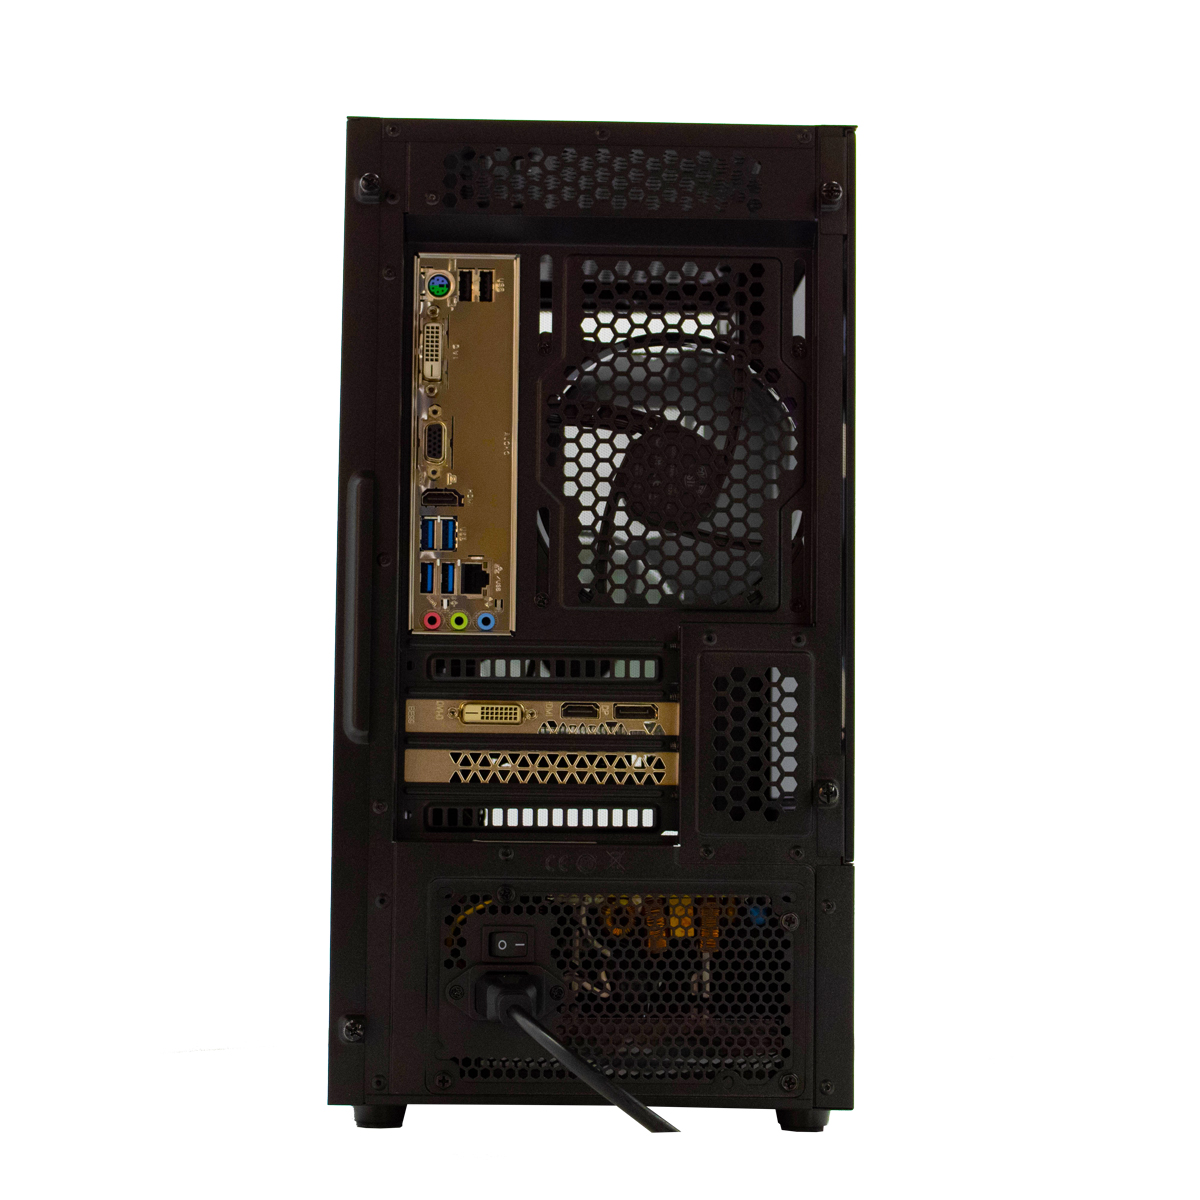 SCREENON Z401135 – V1, Gaming RAM, Graphics PC, 8 GB 610 240 GB Intel UHD SSD